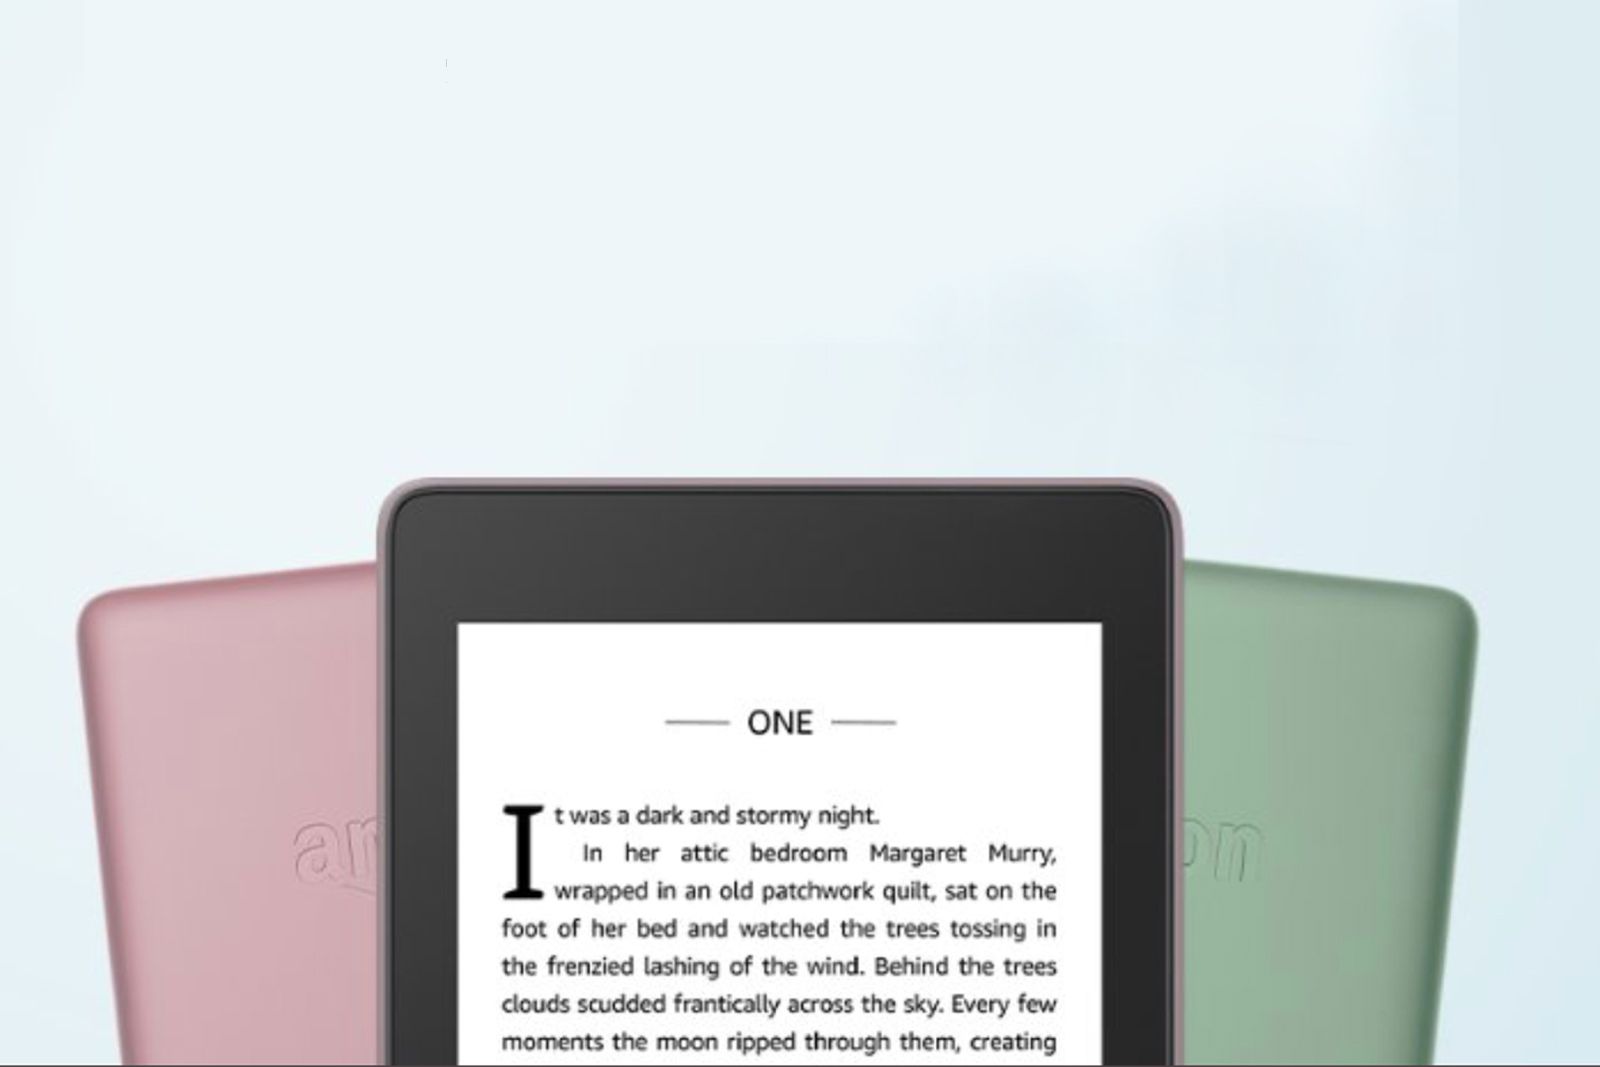 E-Reader  Kindle Paperwhite 6 Wifi 8GB - Verde